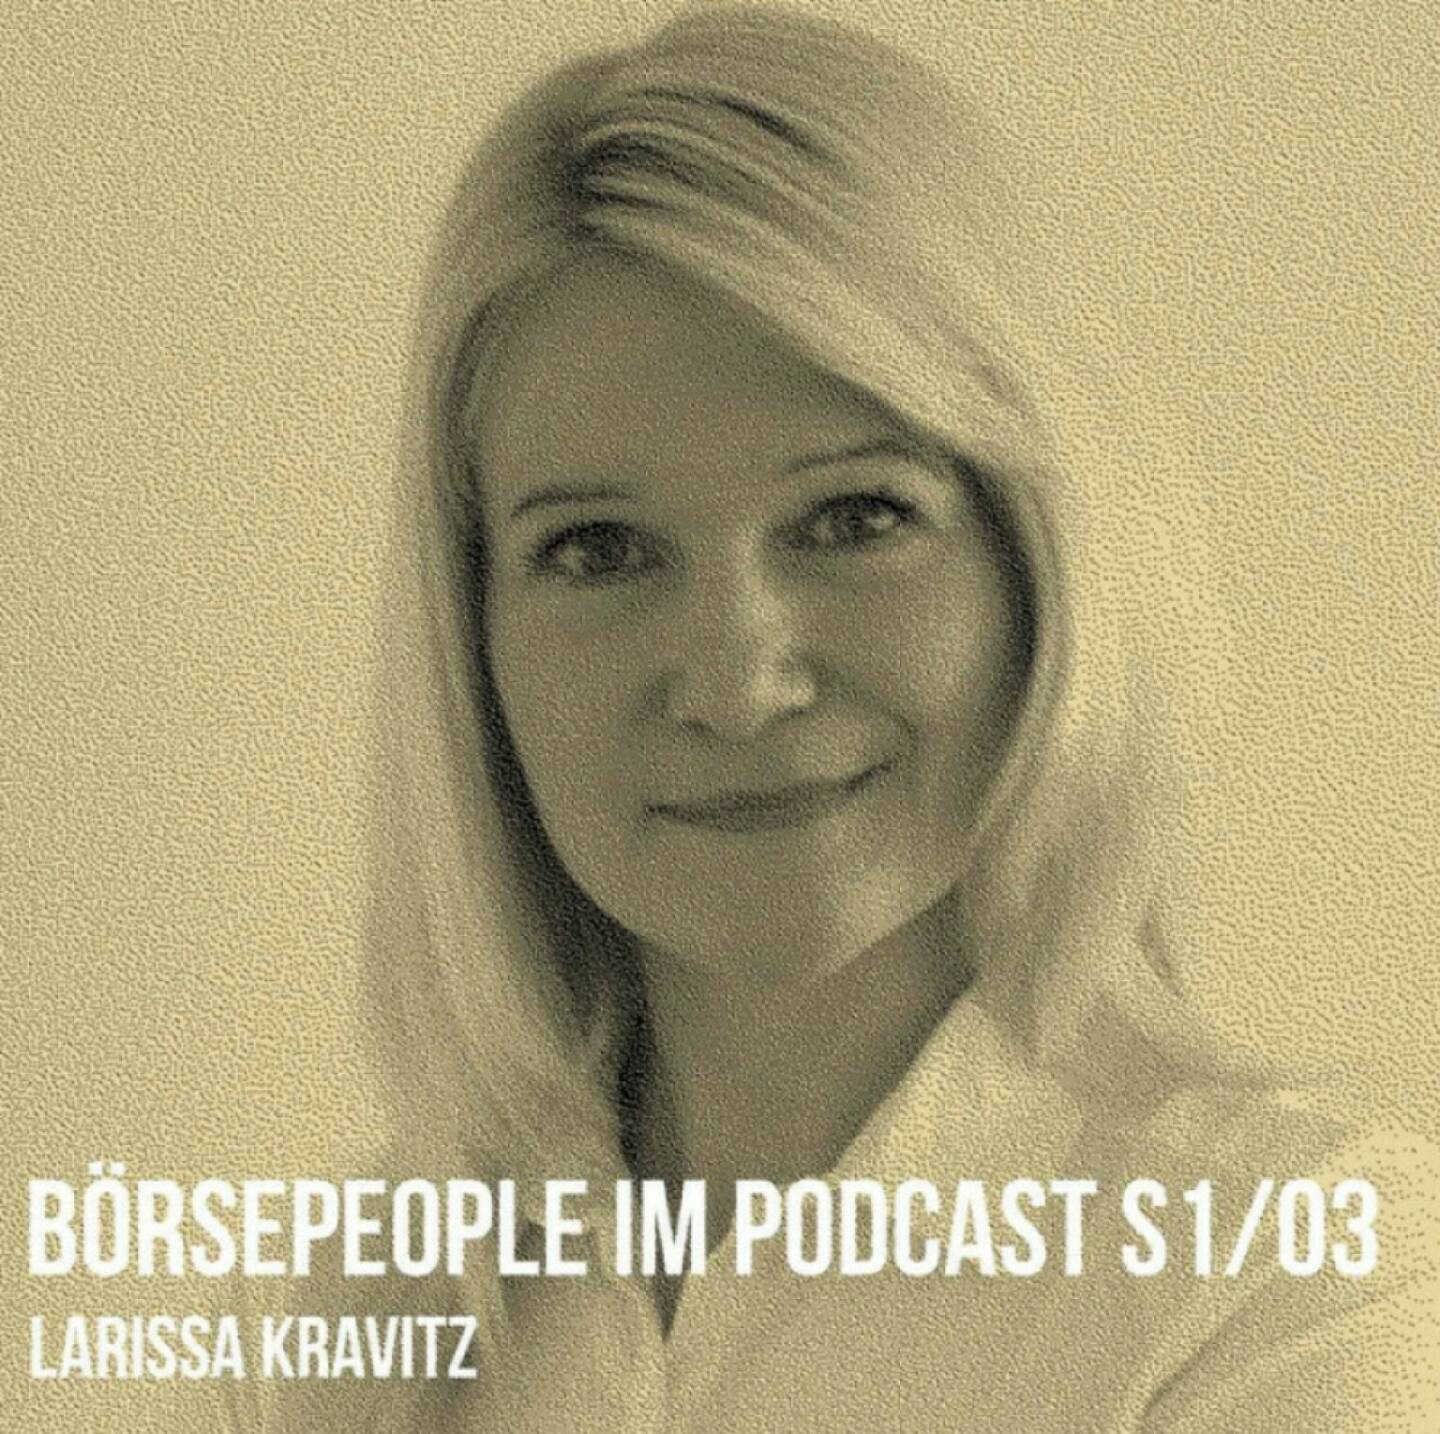 Larissa Kravitz ist der .3 Börsepeople-Gast in unserer Season 1. https://boersenradio.at/page/podcast/3141/